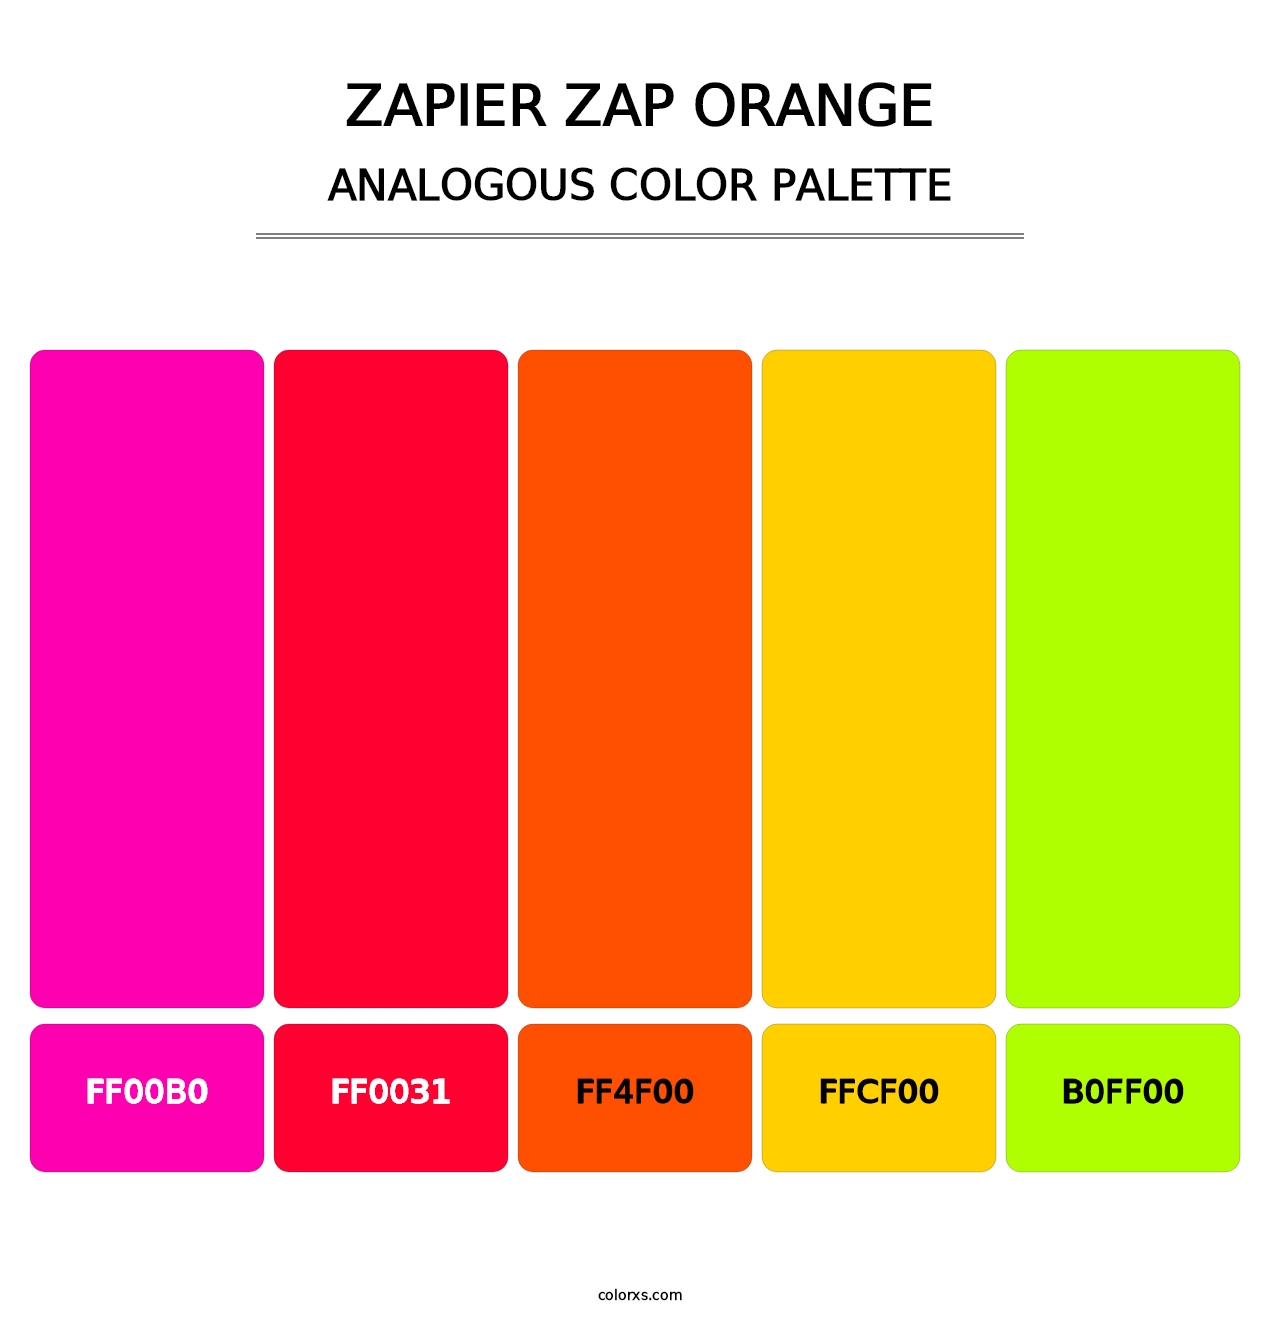 Zapier Zap Orange - Analogous Color Palette